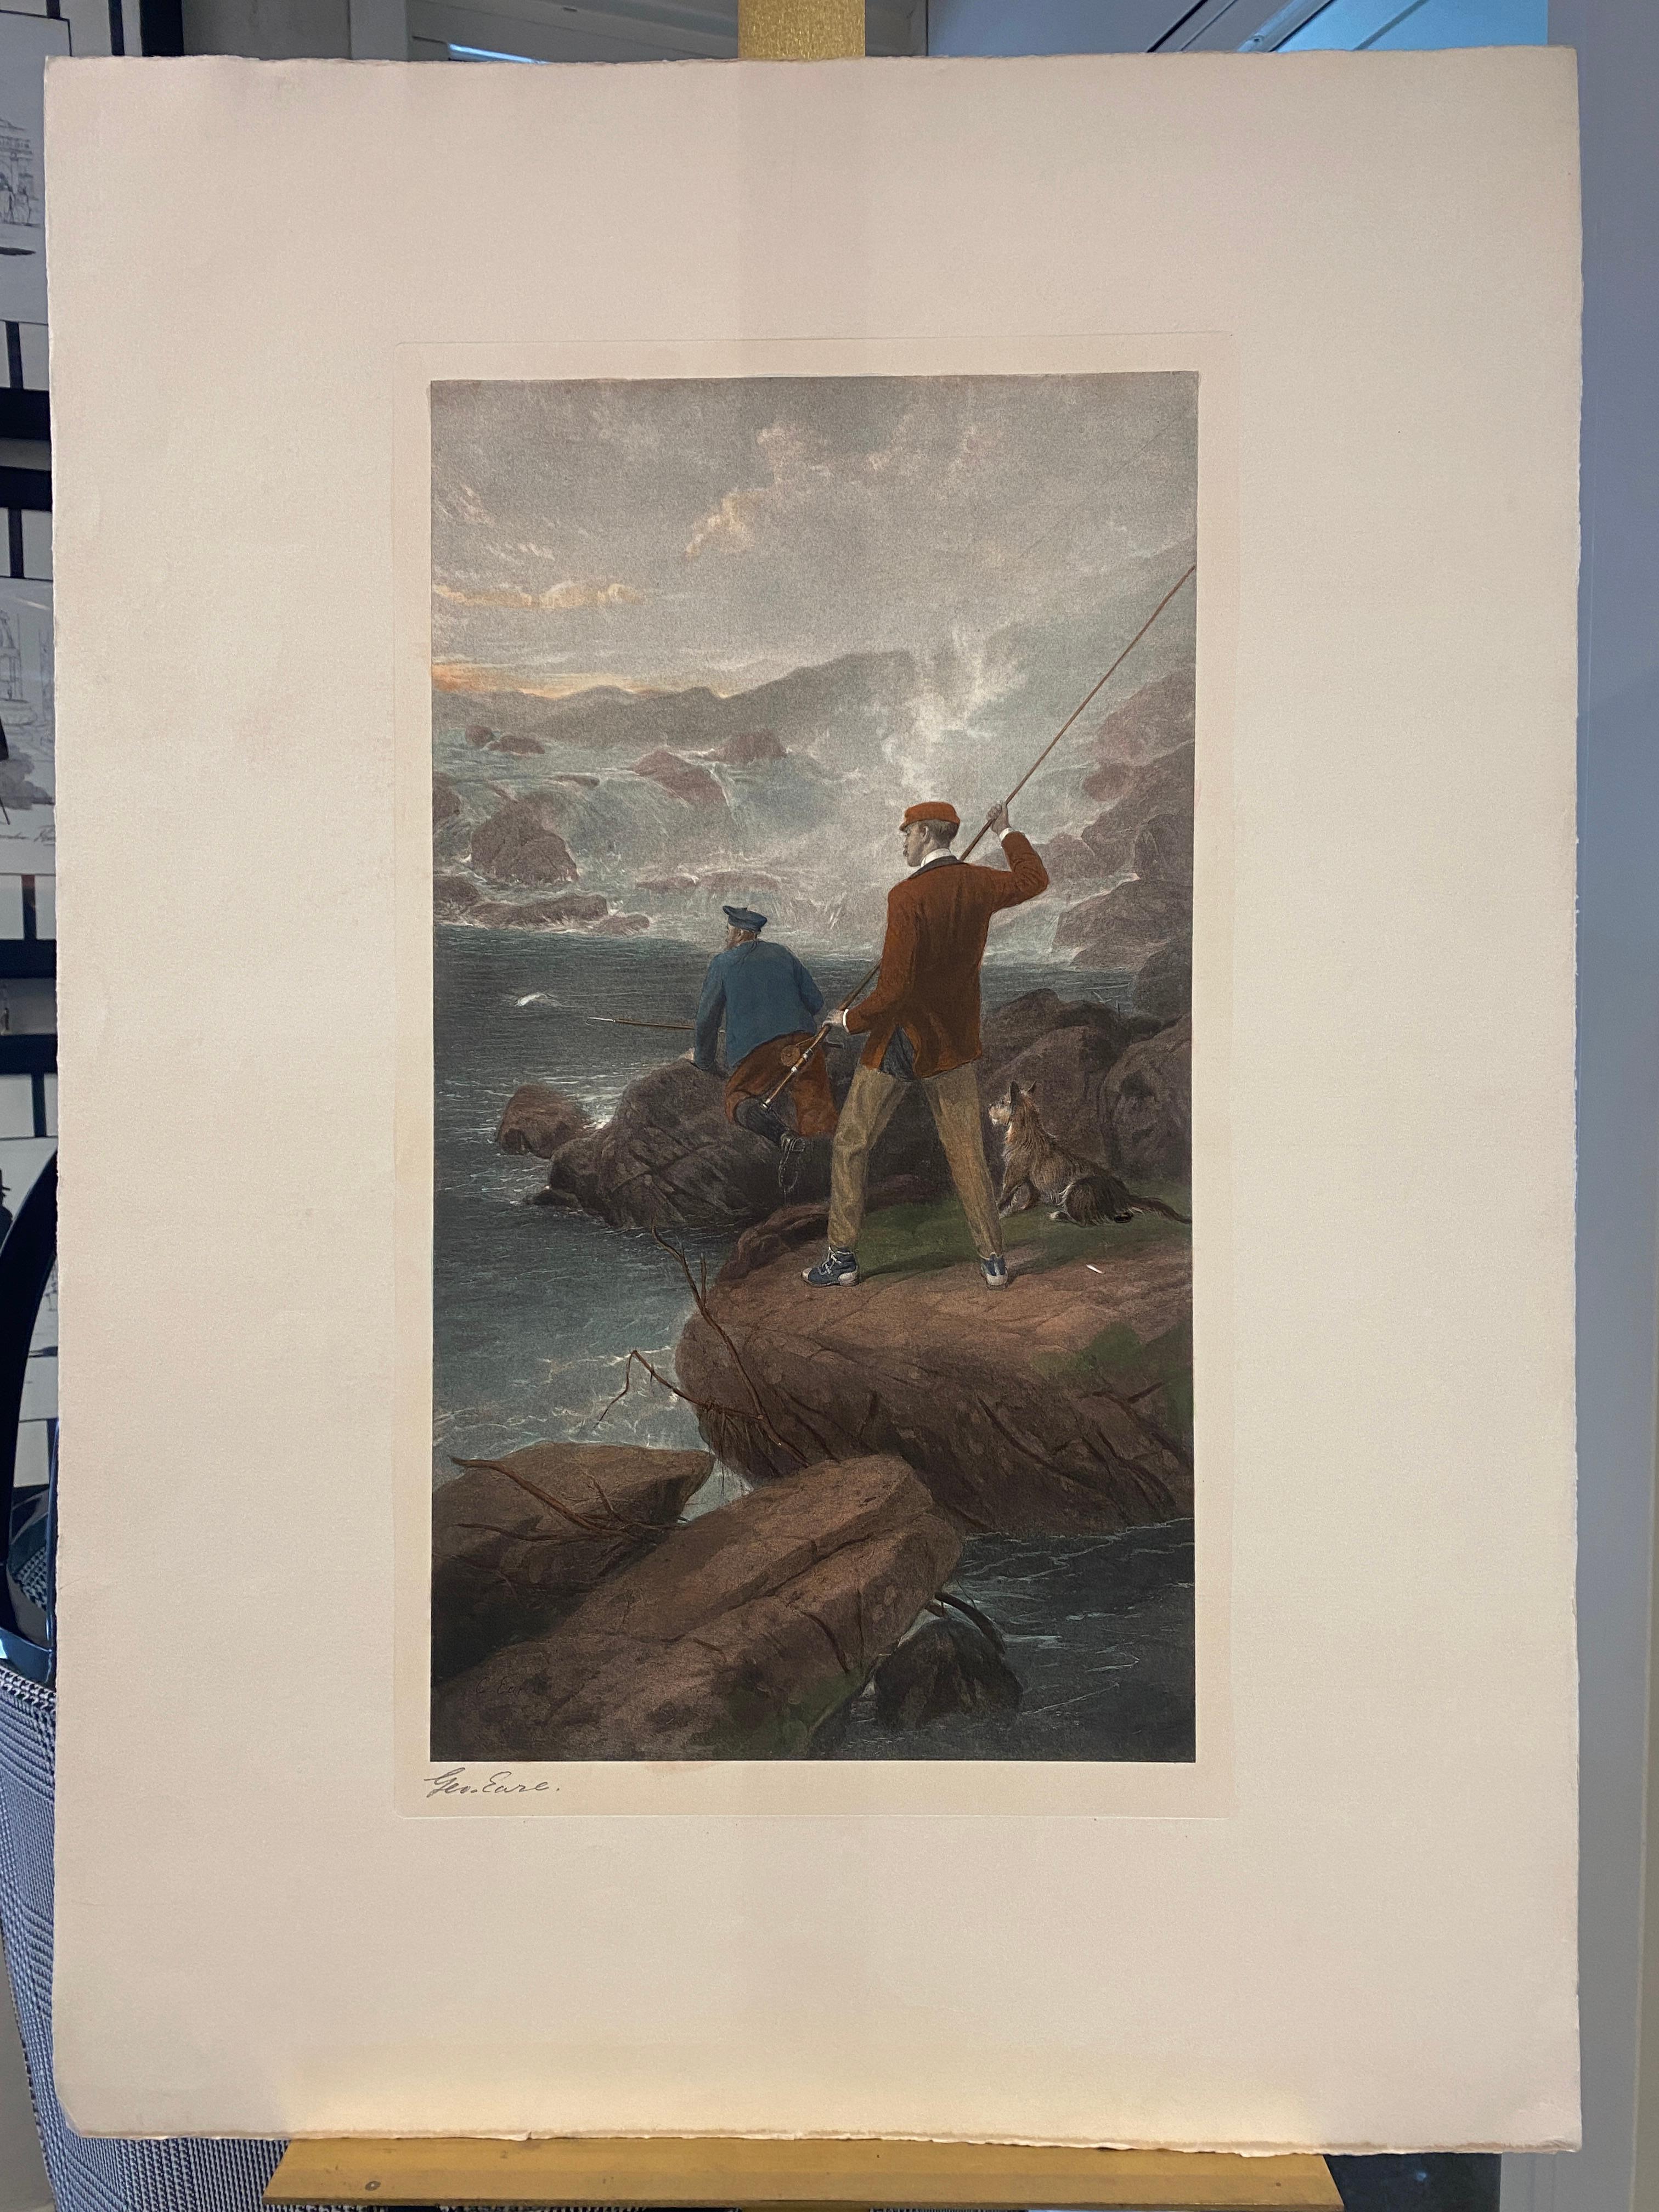 Schöne Reproduktion einer typischen englischen Landschaft, die Männer beim Fischen zeigt. 
Das Original wurde von Geroge Earl, einem berühmten englischen Maler und Illustrator, angefertigt. 
Unten rechts befindet sich die Unterschrift des Autors